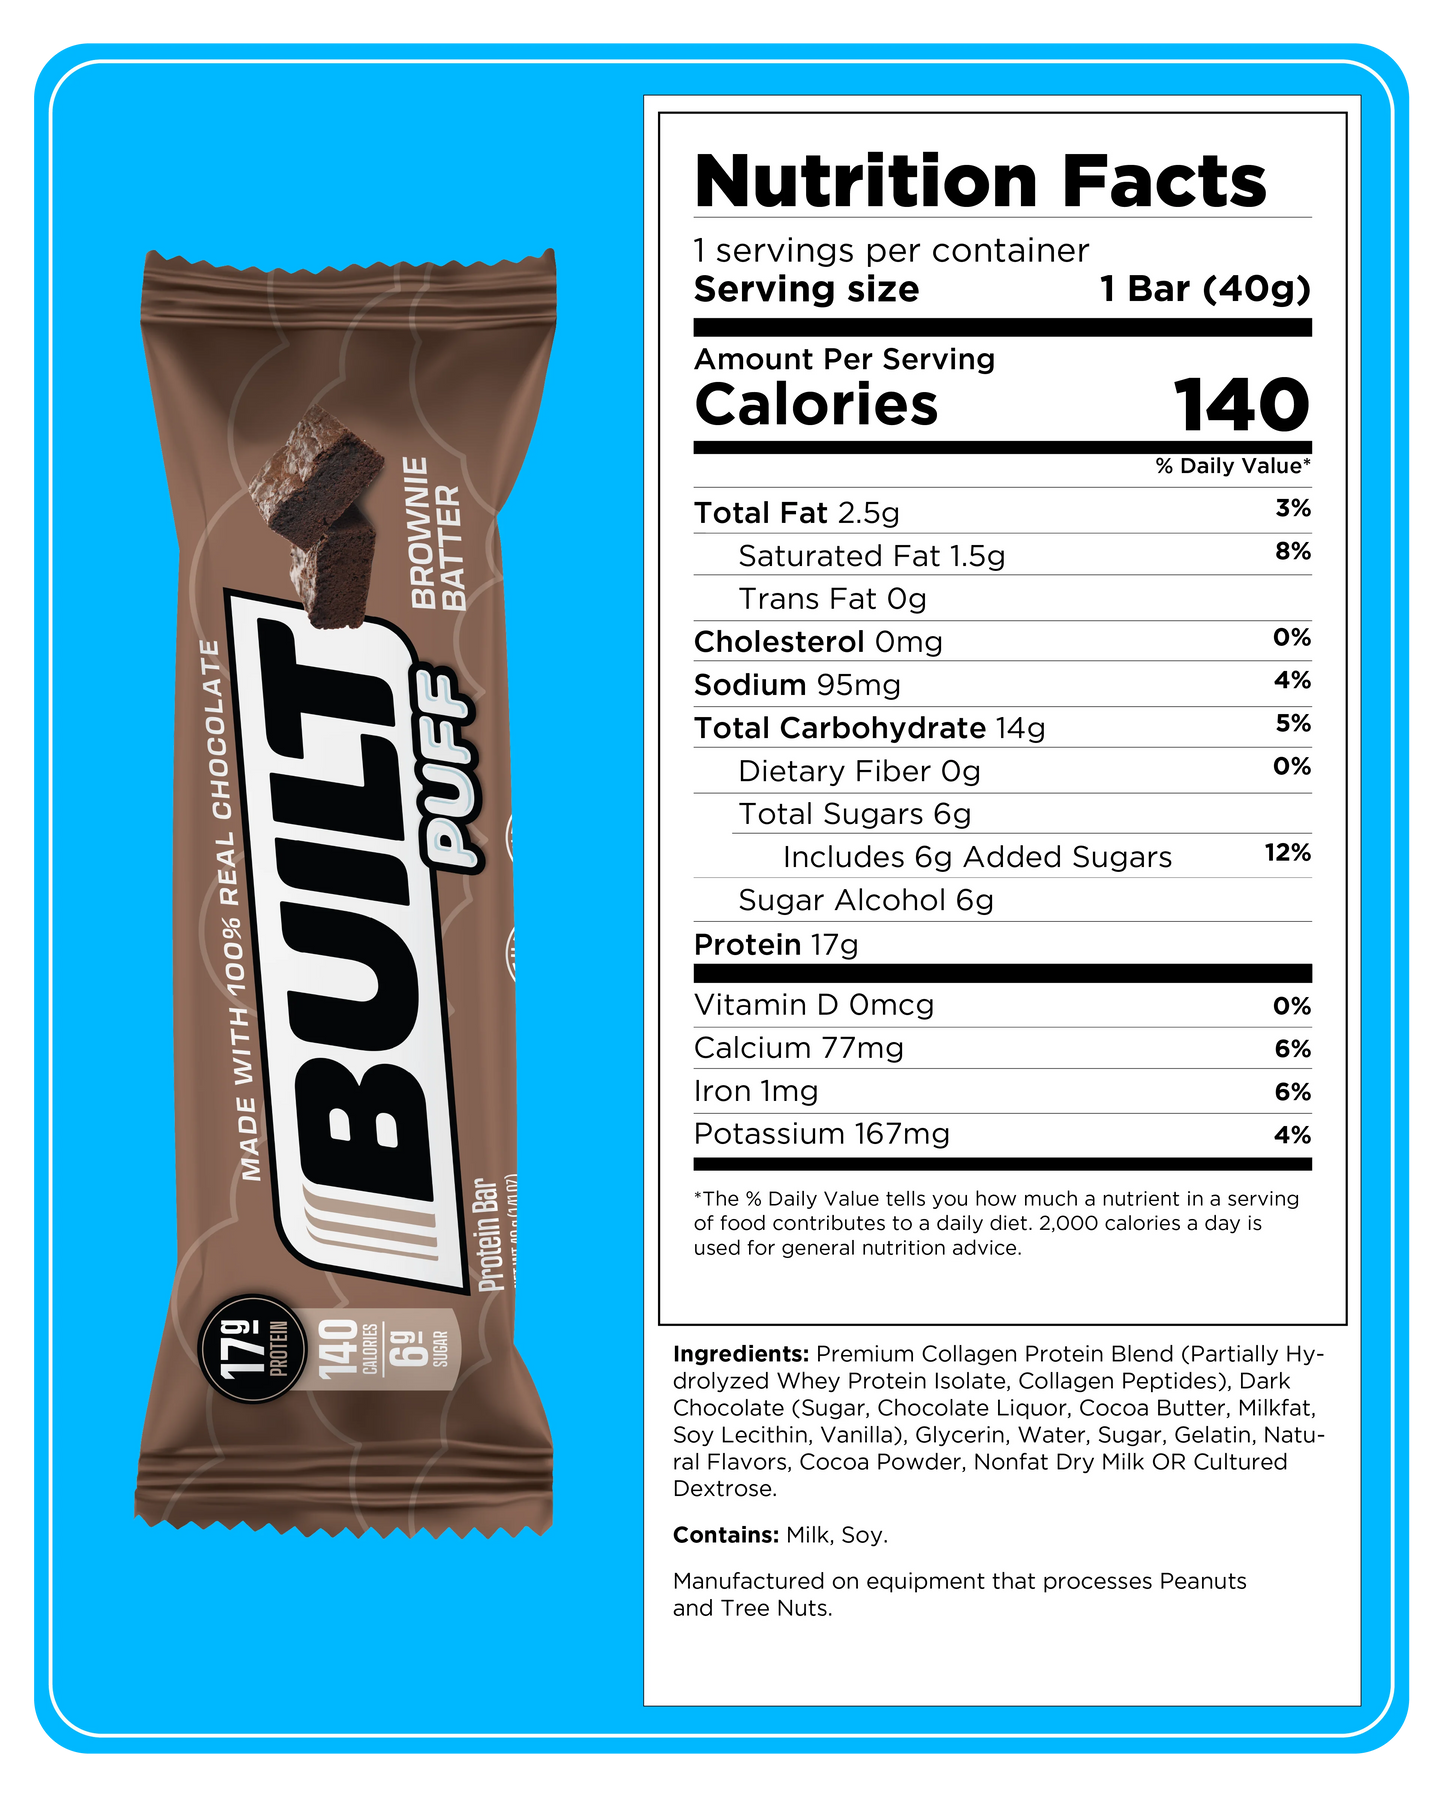 Puff Protein Bar, Collagen, Gluten Free, Brownie Batter, 1.41Oz Bars, 4 Count Box